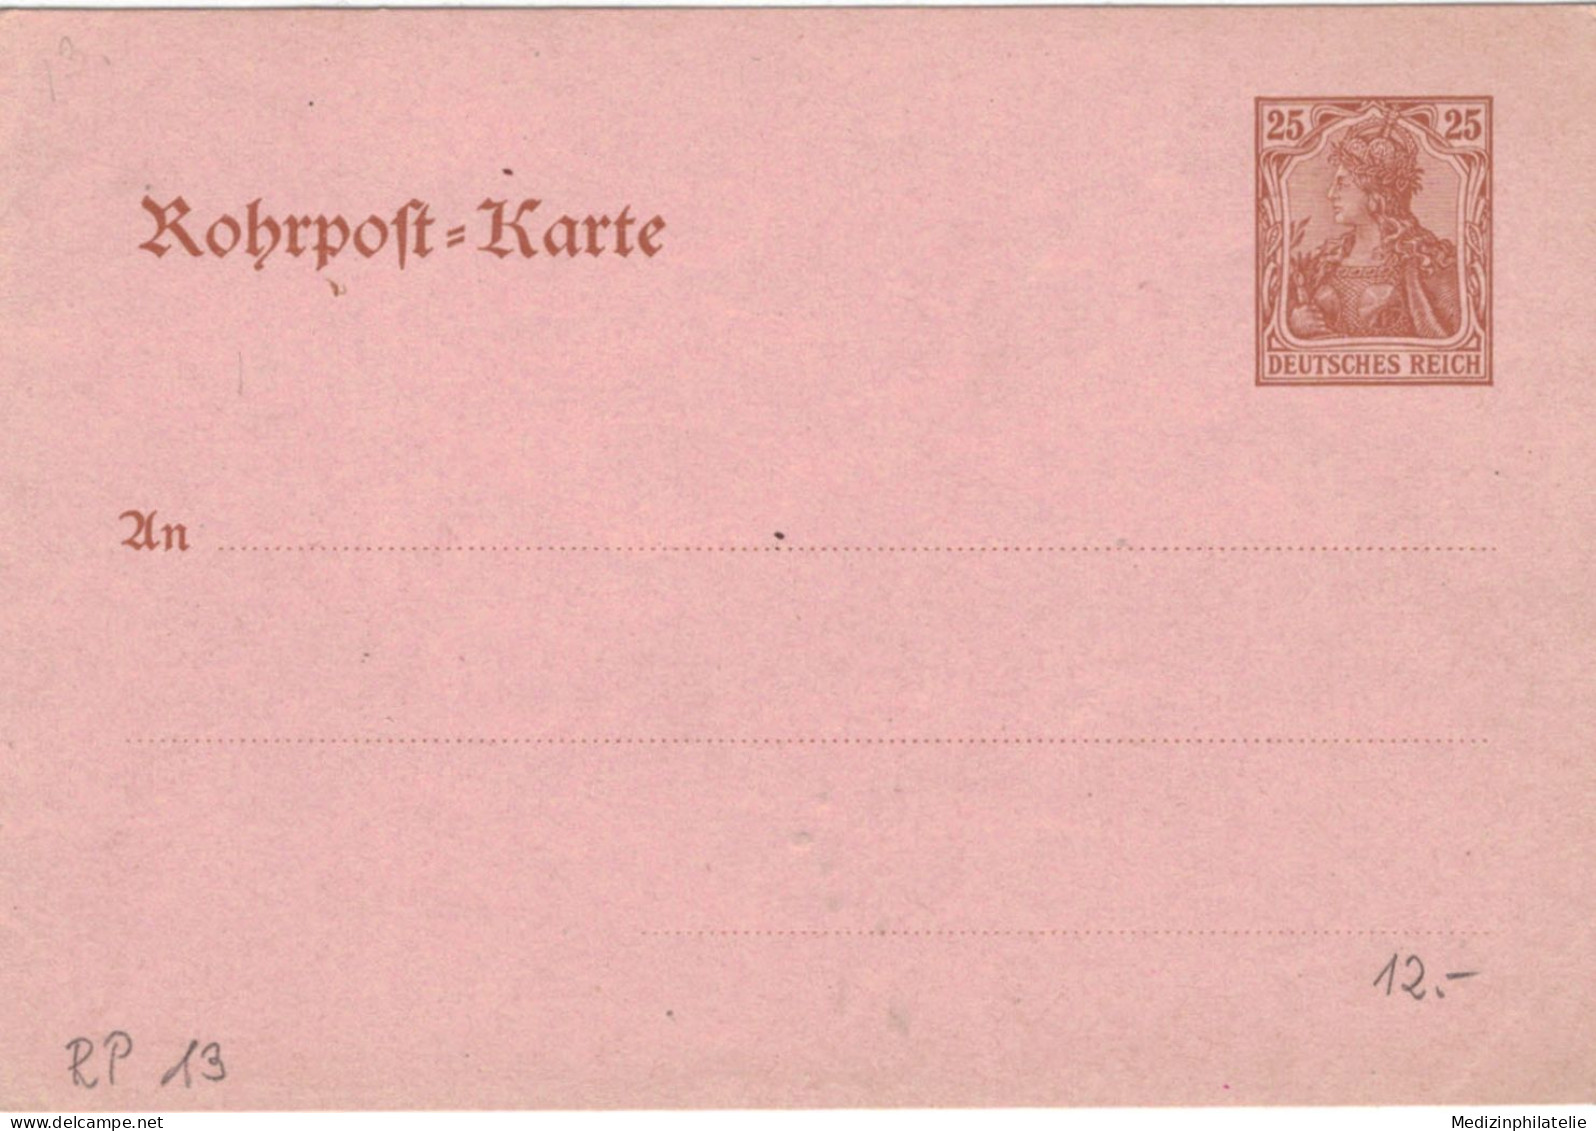 Rohrpost-Karte 25 Pf. Germania - Ungebraucht - 13 - Postkarten